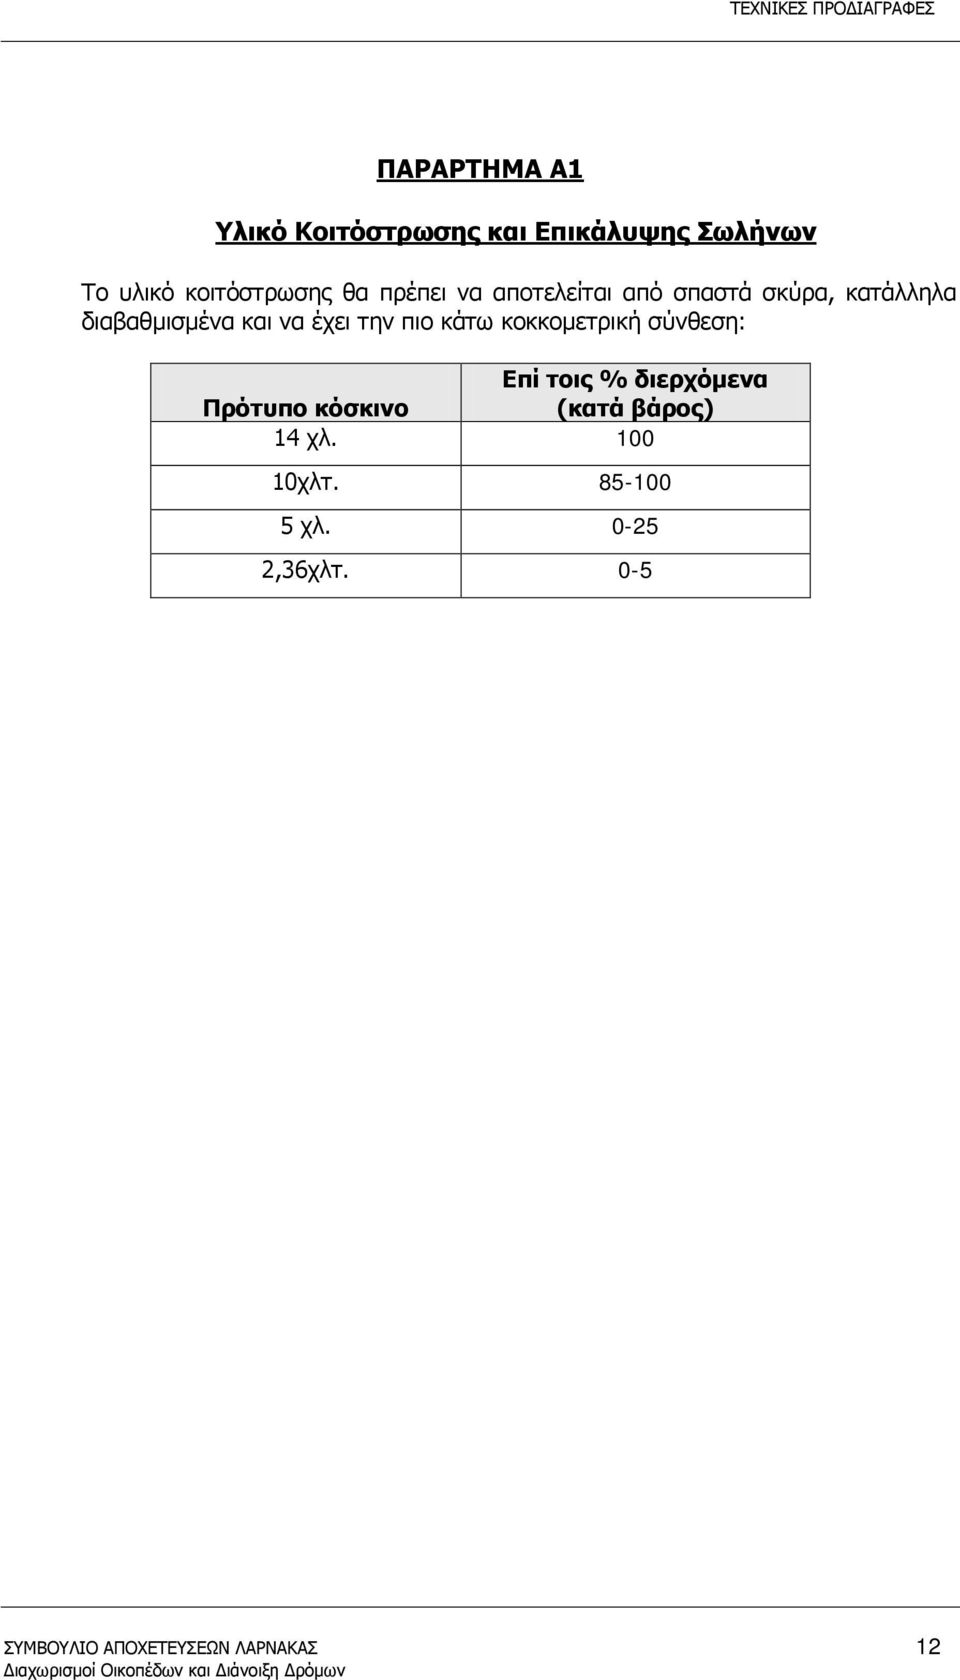 πιο κάτω κοκκομετρική σύνθεση: Επί τοις % διερχόμενα Πρότυπο κόσκινο (κατά βάρος)